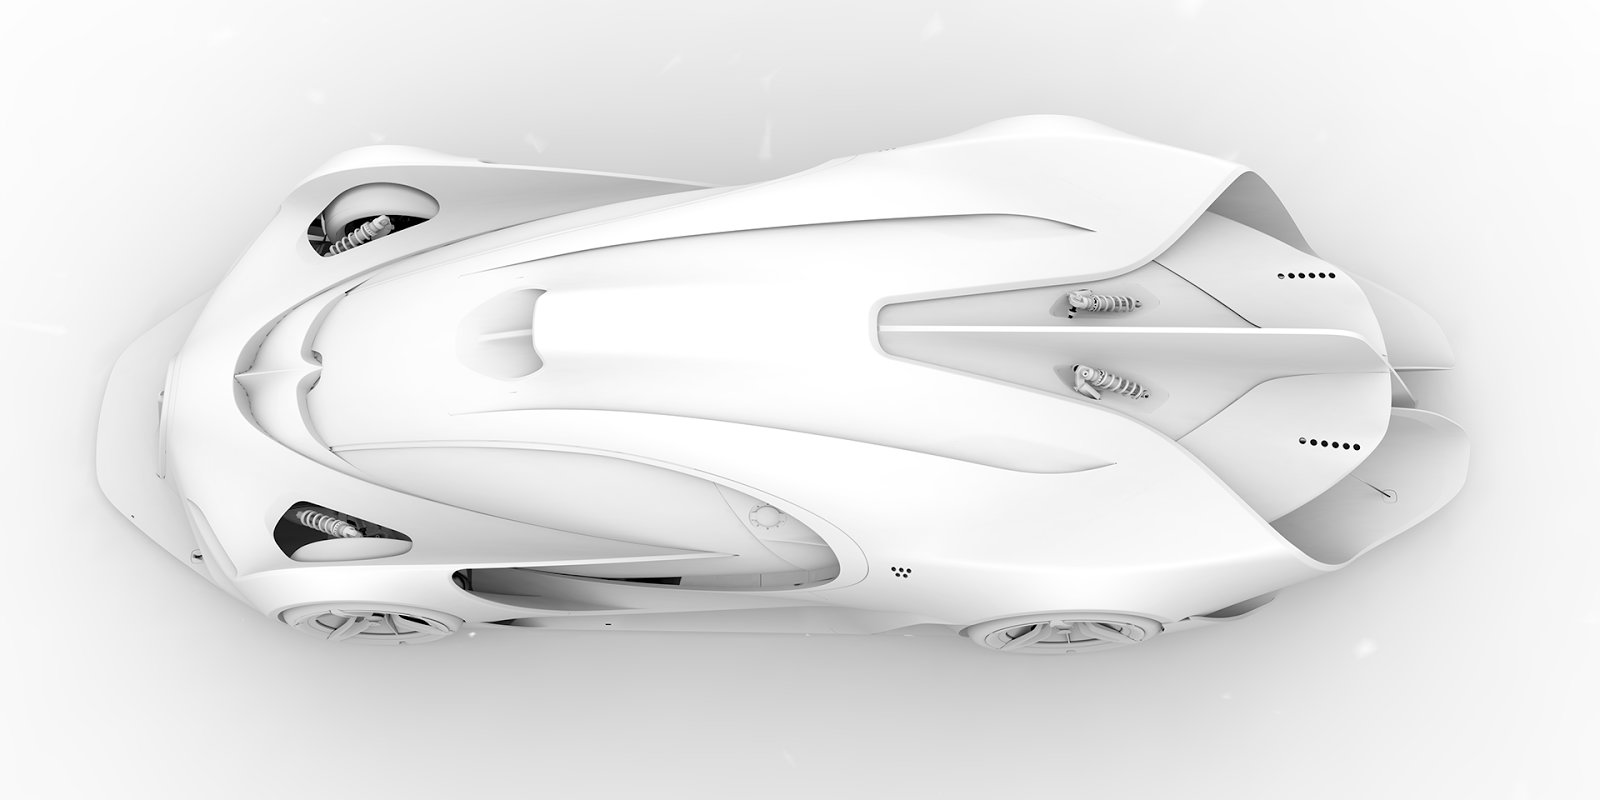 Bugatti Concept